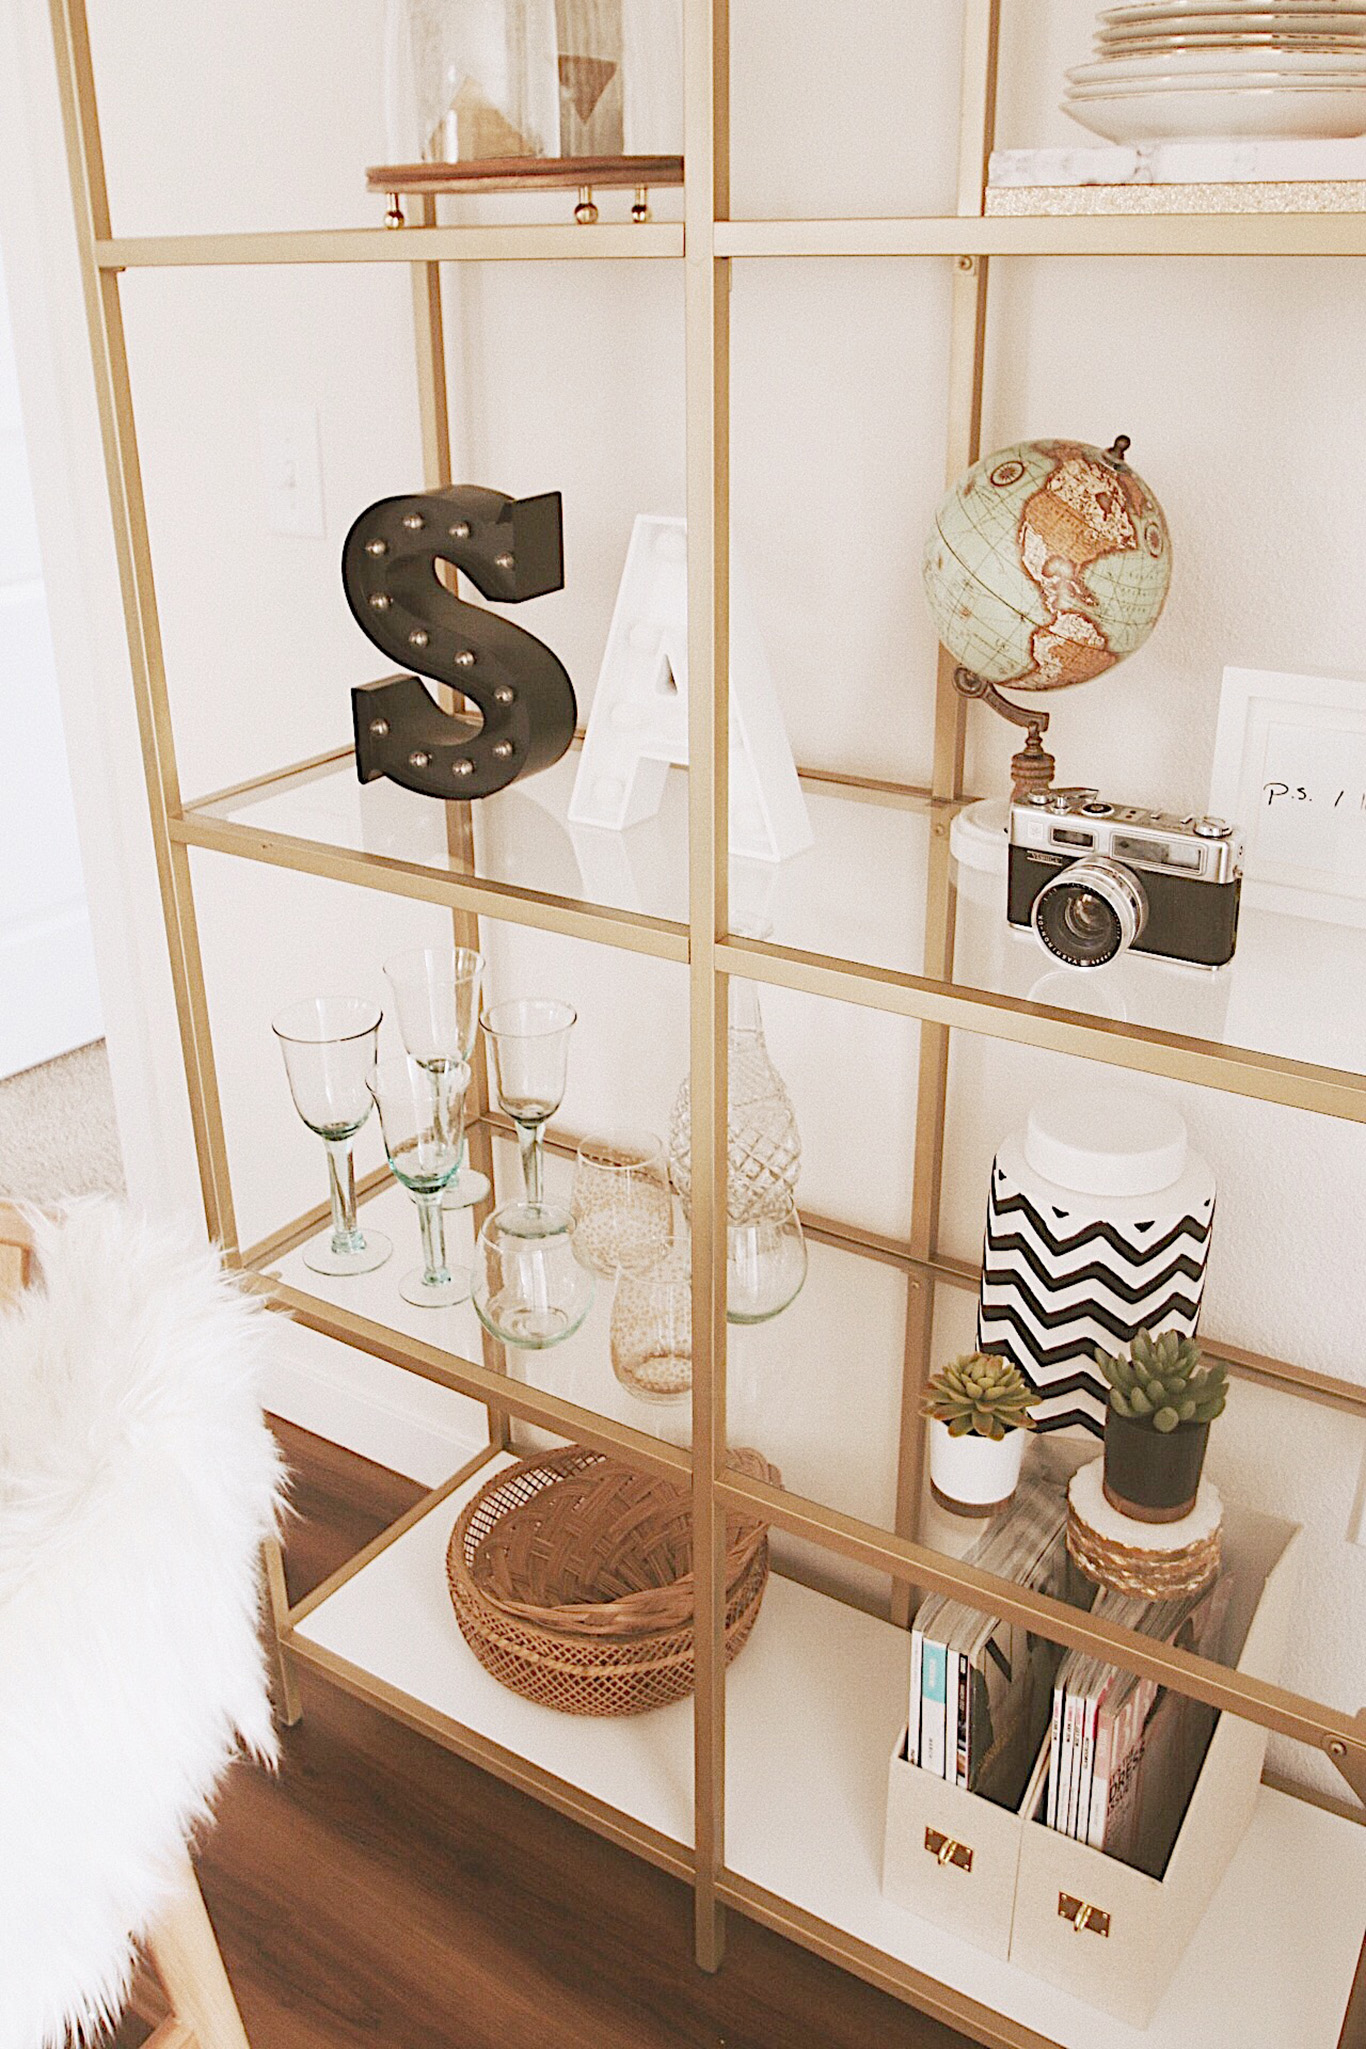 Alena Gidenko of modaprints.com shares her home decor and how she decorates a small apartment 